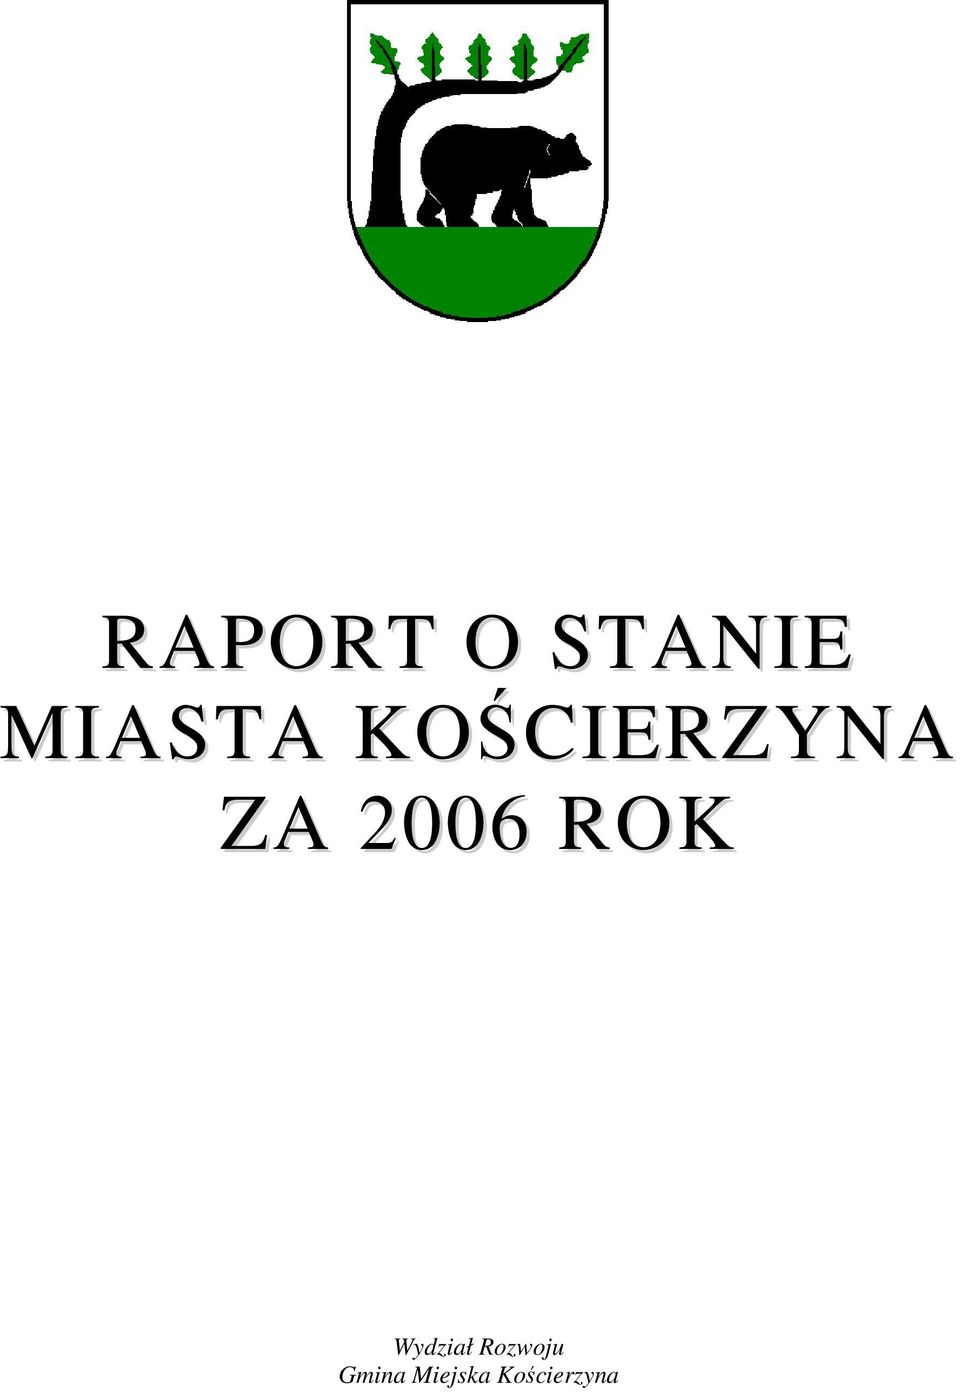 2006 ROK Wydział